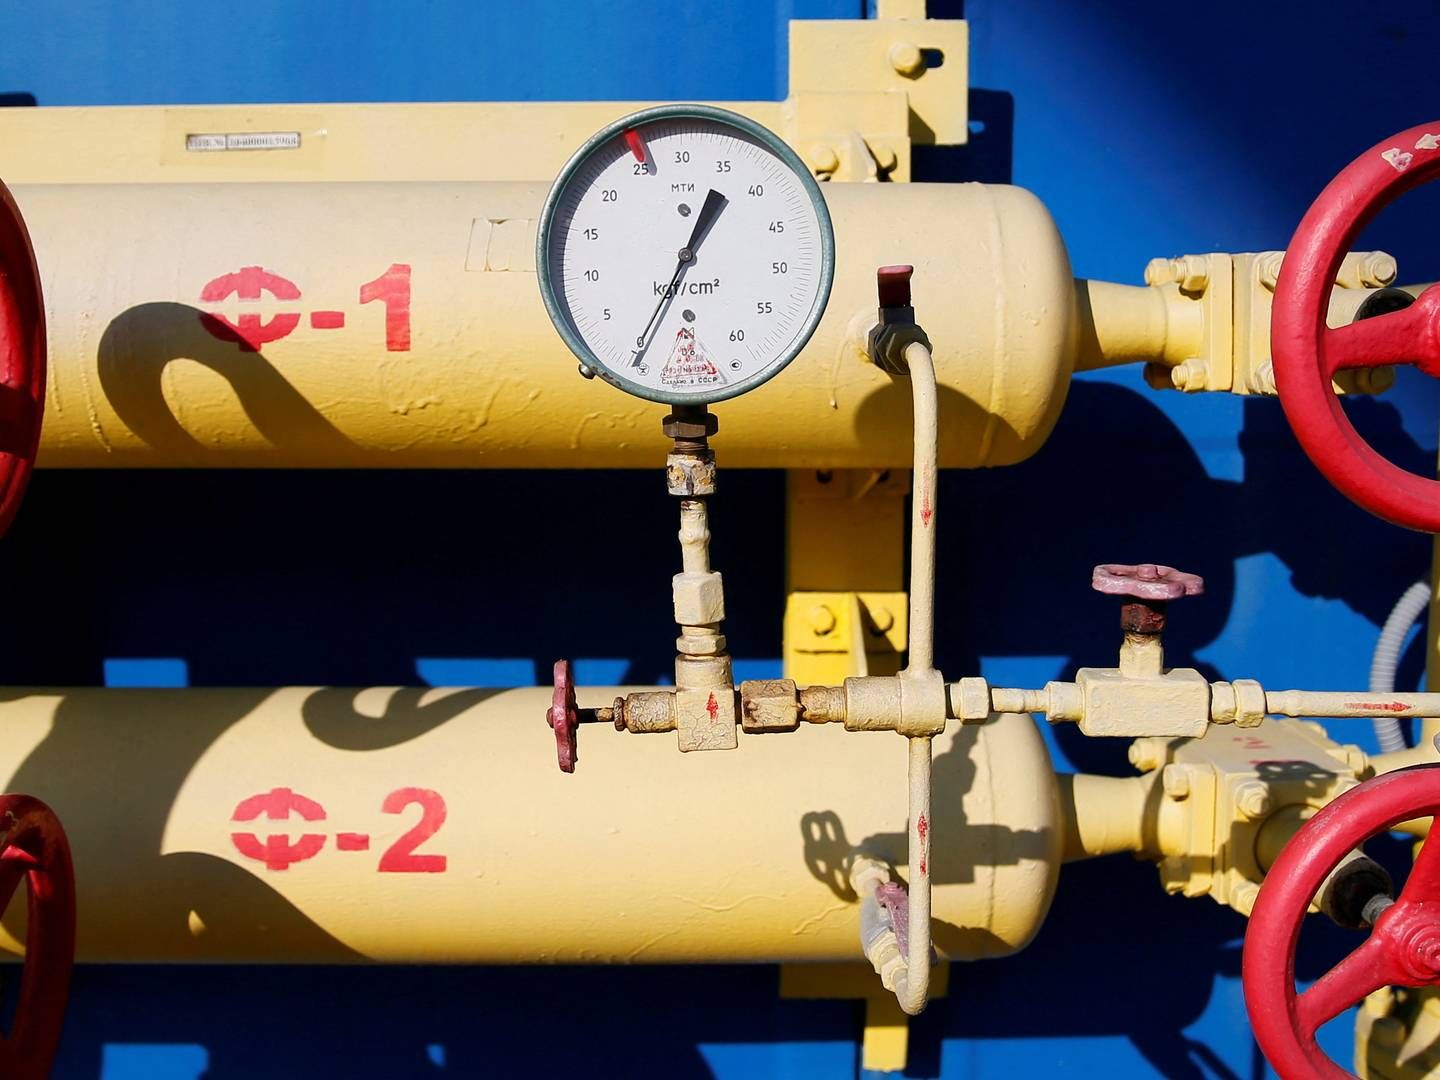 Norge kan ikke eksportere mere gas, lyder det fra norsk side. | Foto: GLEB GARANICH/REUTERS / X00550